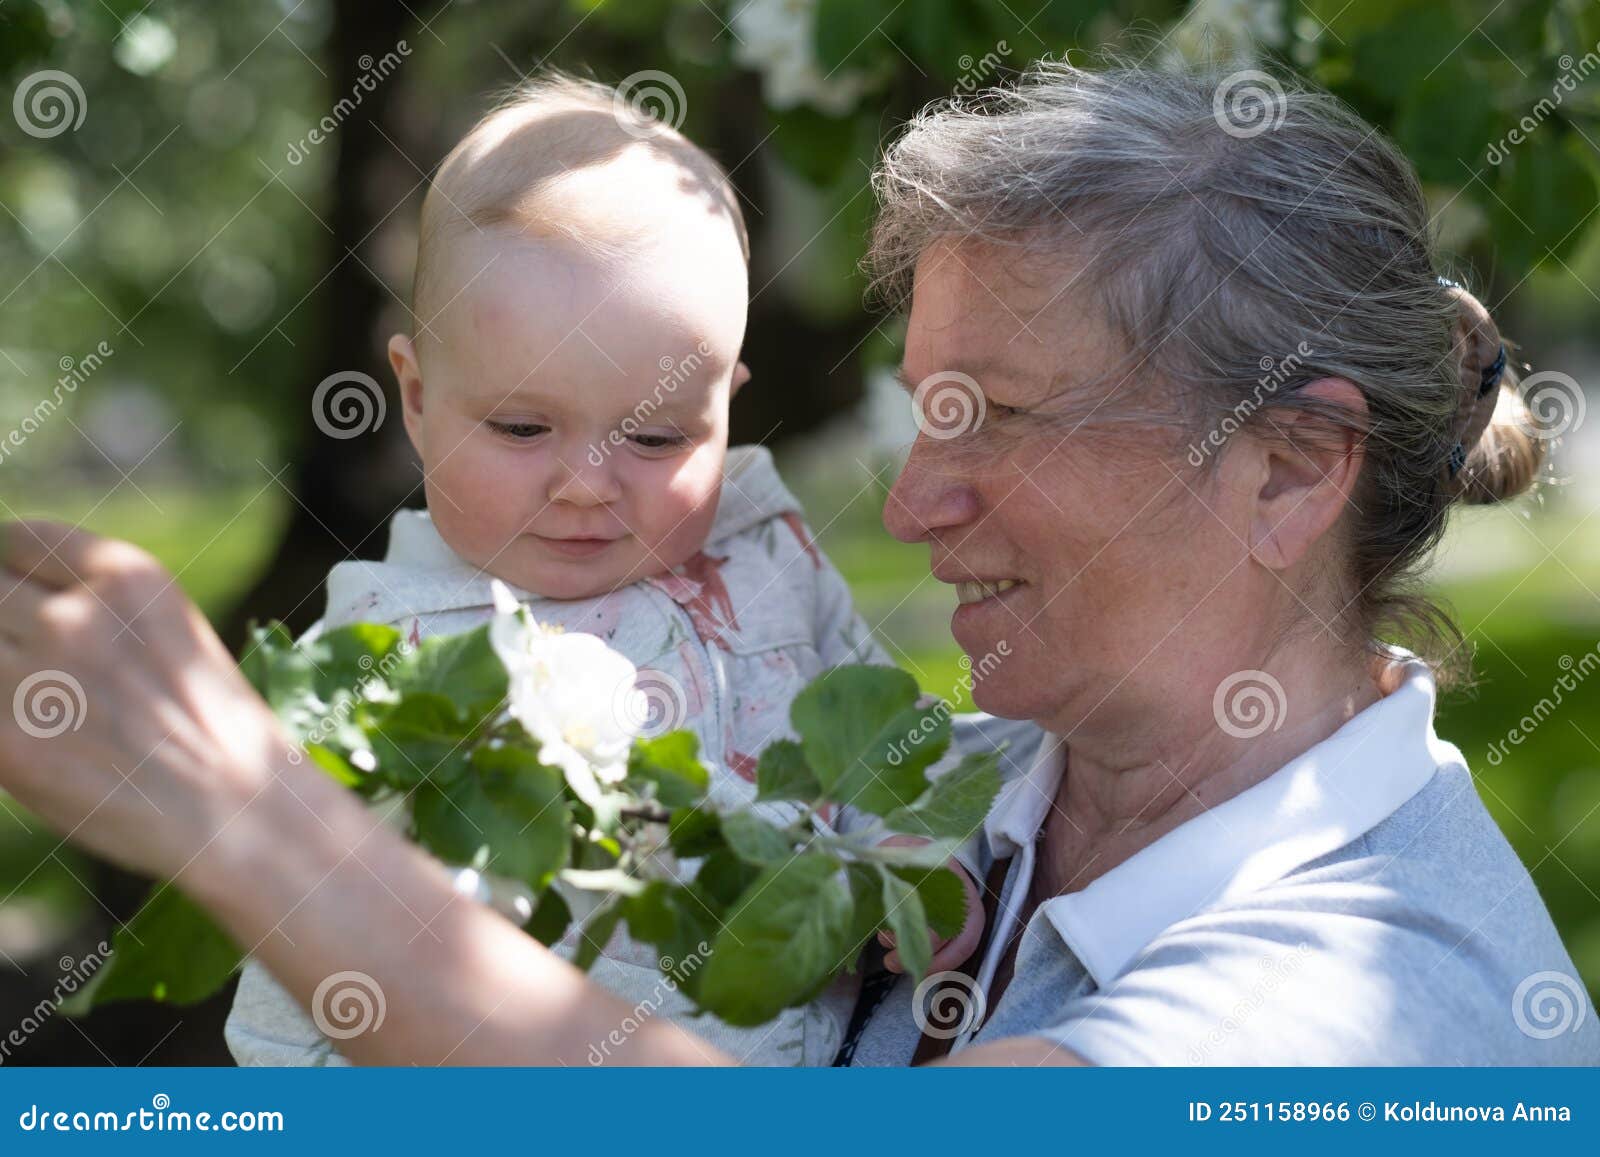 γιαγιά που περπατάει με την εγγονή της έξω στο πάρκο στις αρχές του καλοκαιριού